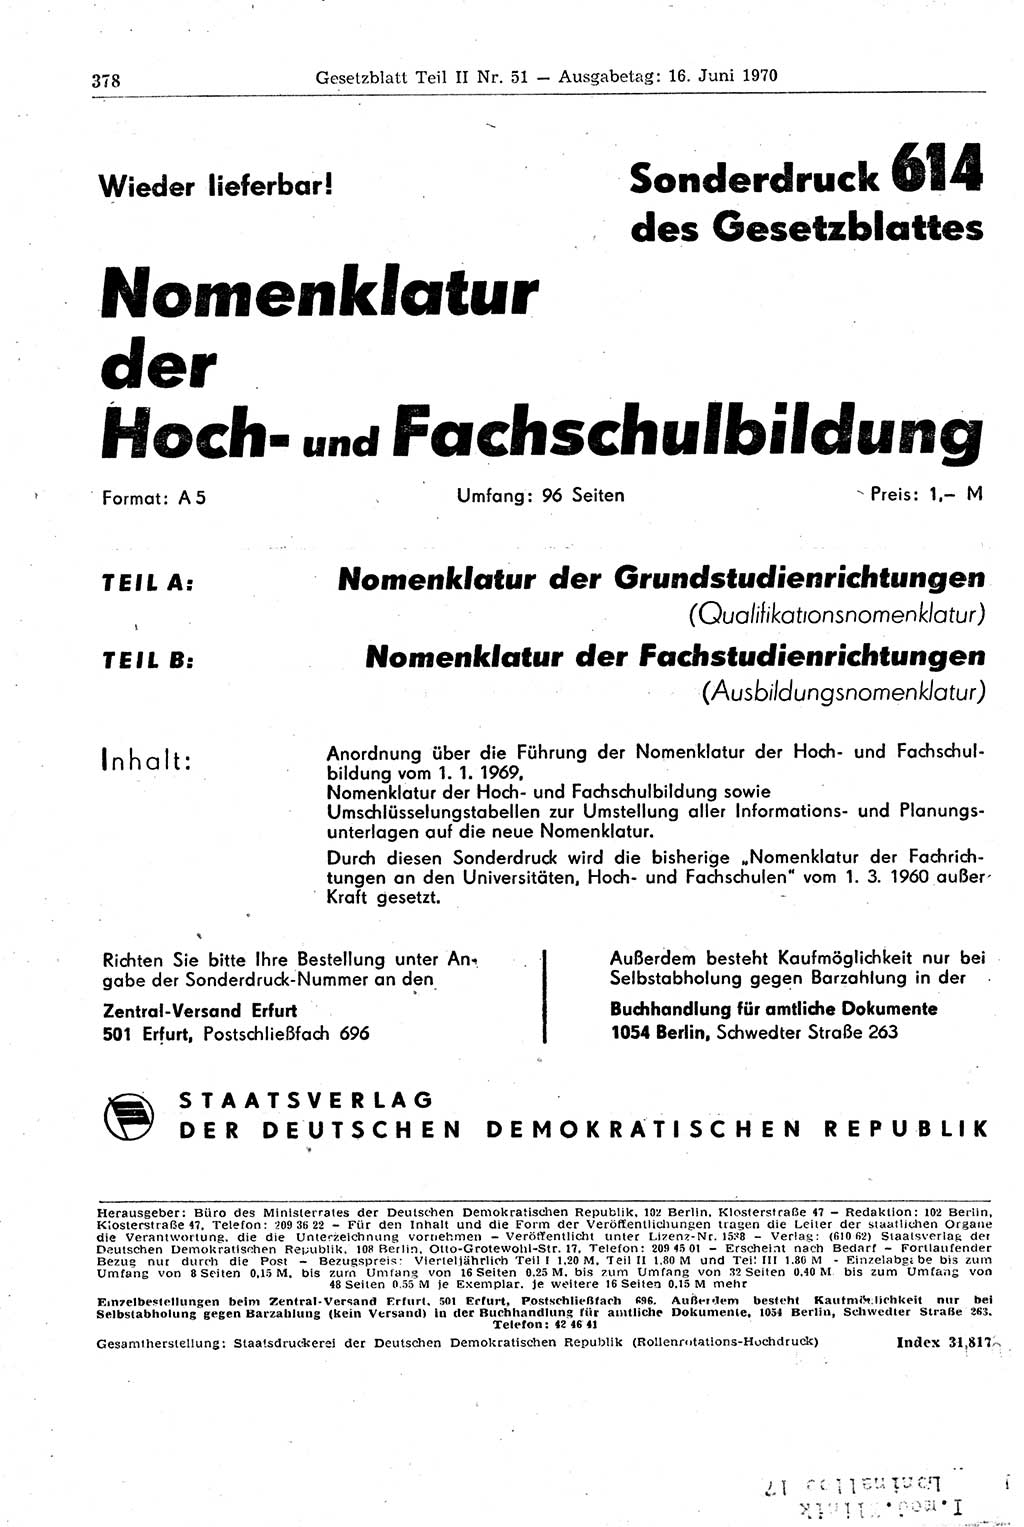 Gesetzblatt (GBl.) der Deutschen Demokratischen Republik (DDR) Teil ⅠⅠ 1970, Seite 378 (GBl. DDR ⅠⅠ 1970, S. 378)